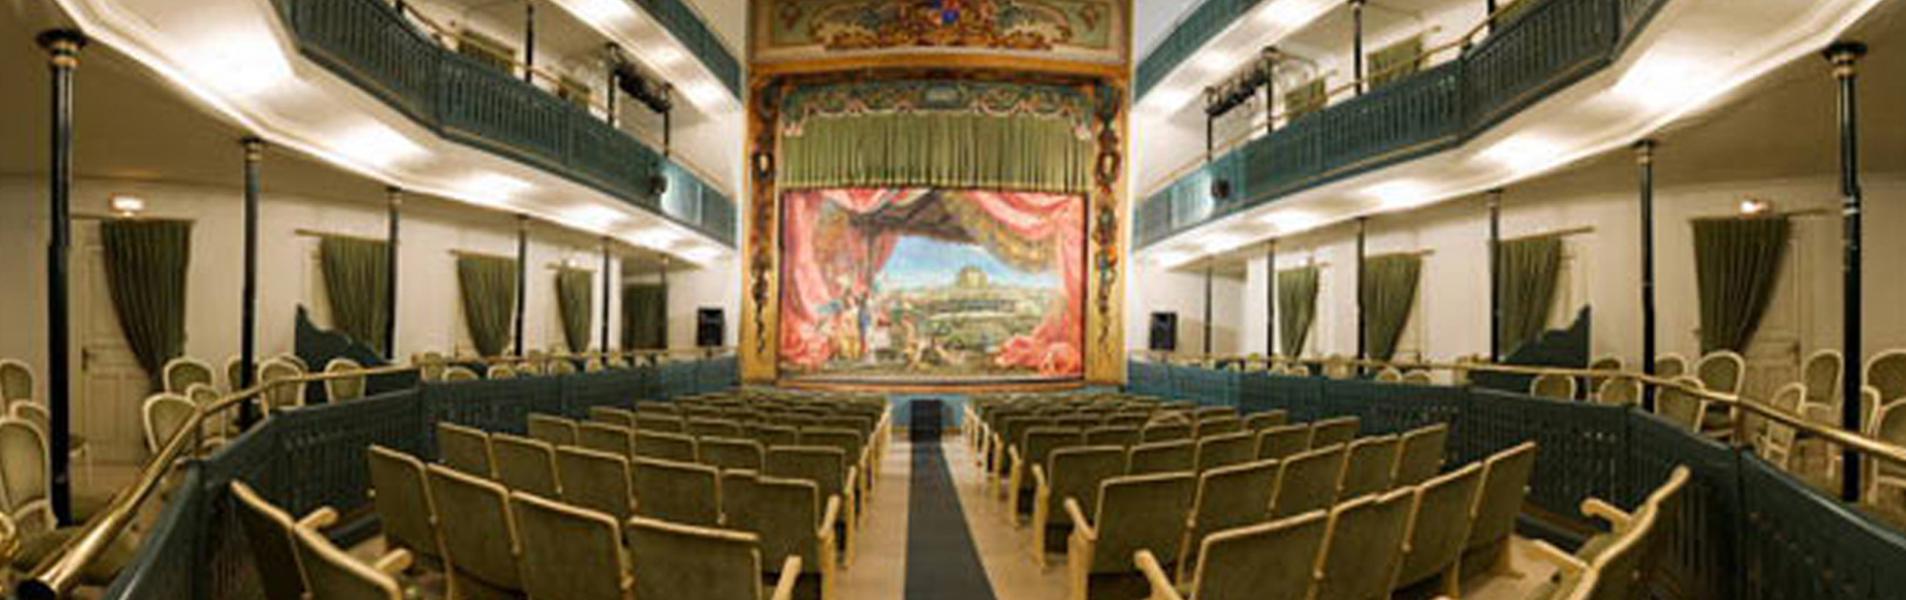 Teatro Lope de Vega de Chinchón